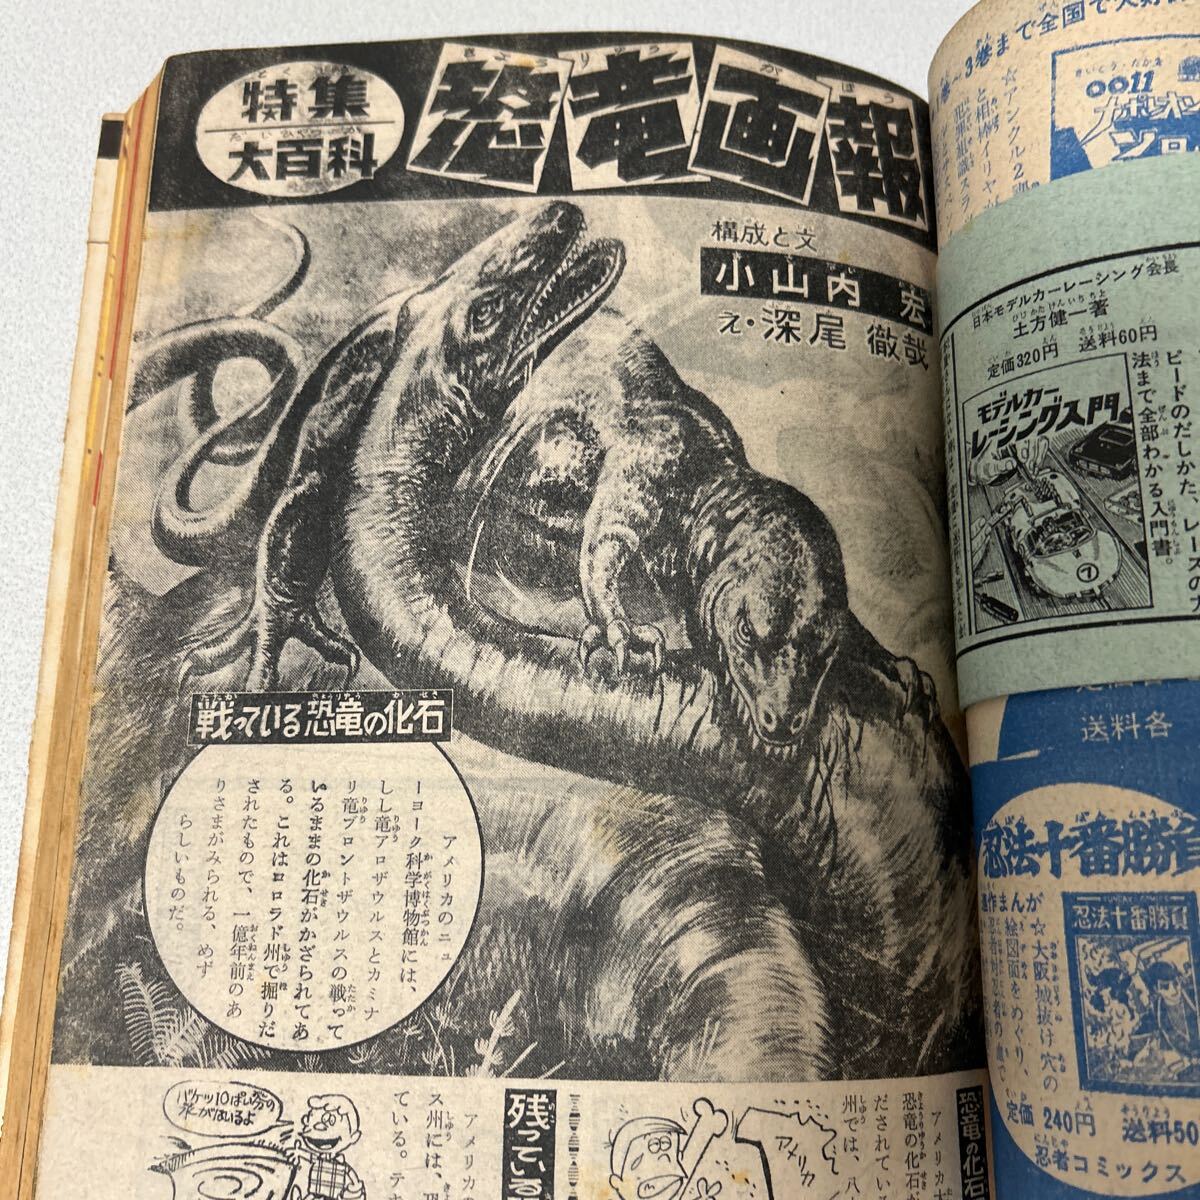 [....1967 год 7 месяц номер ] динозавр .. Spy введение . бог van da-lato Patrol Space man тутовик рисовое поле следующий . камень лес глава Taro Showa 42 год 